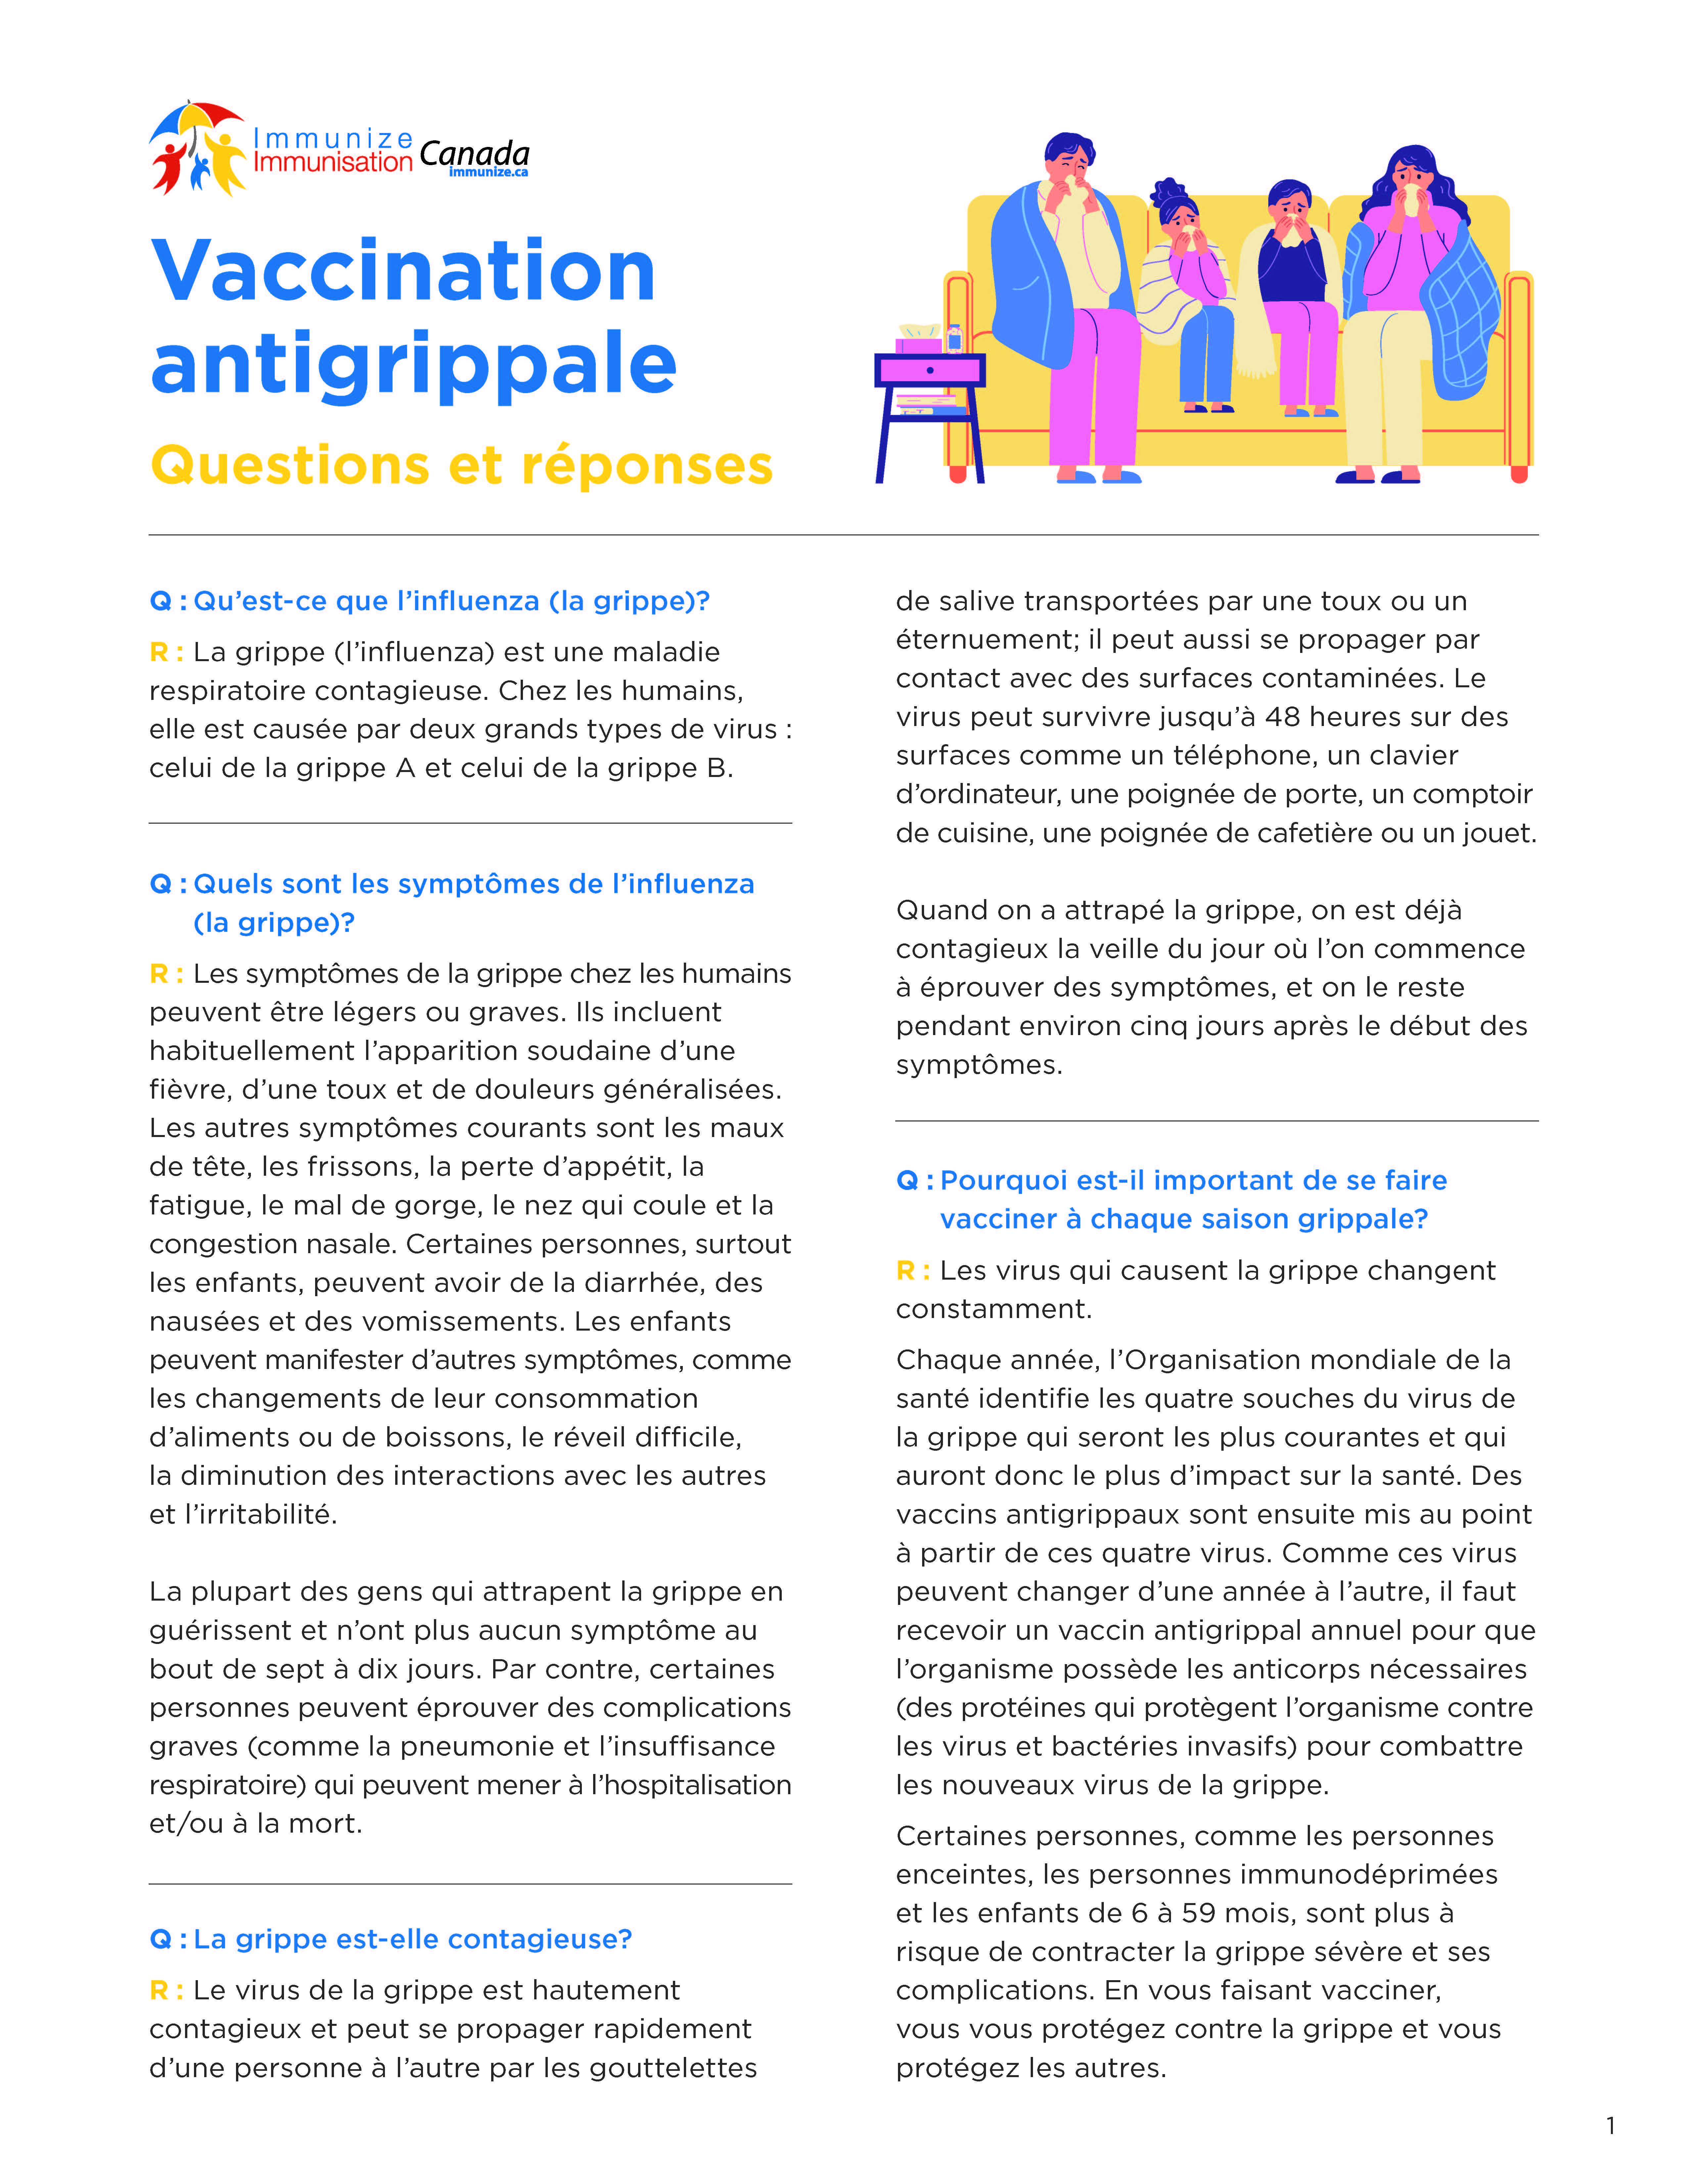 Vaccination antigrippale : Questions et réponses